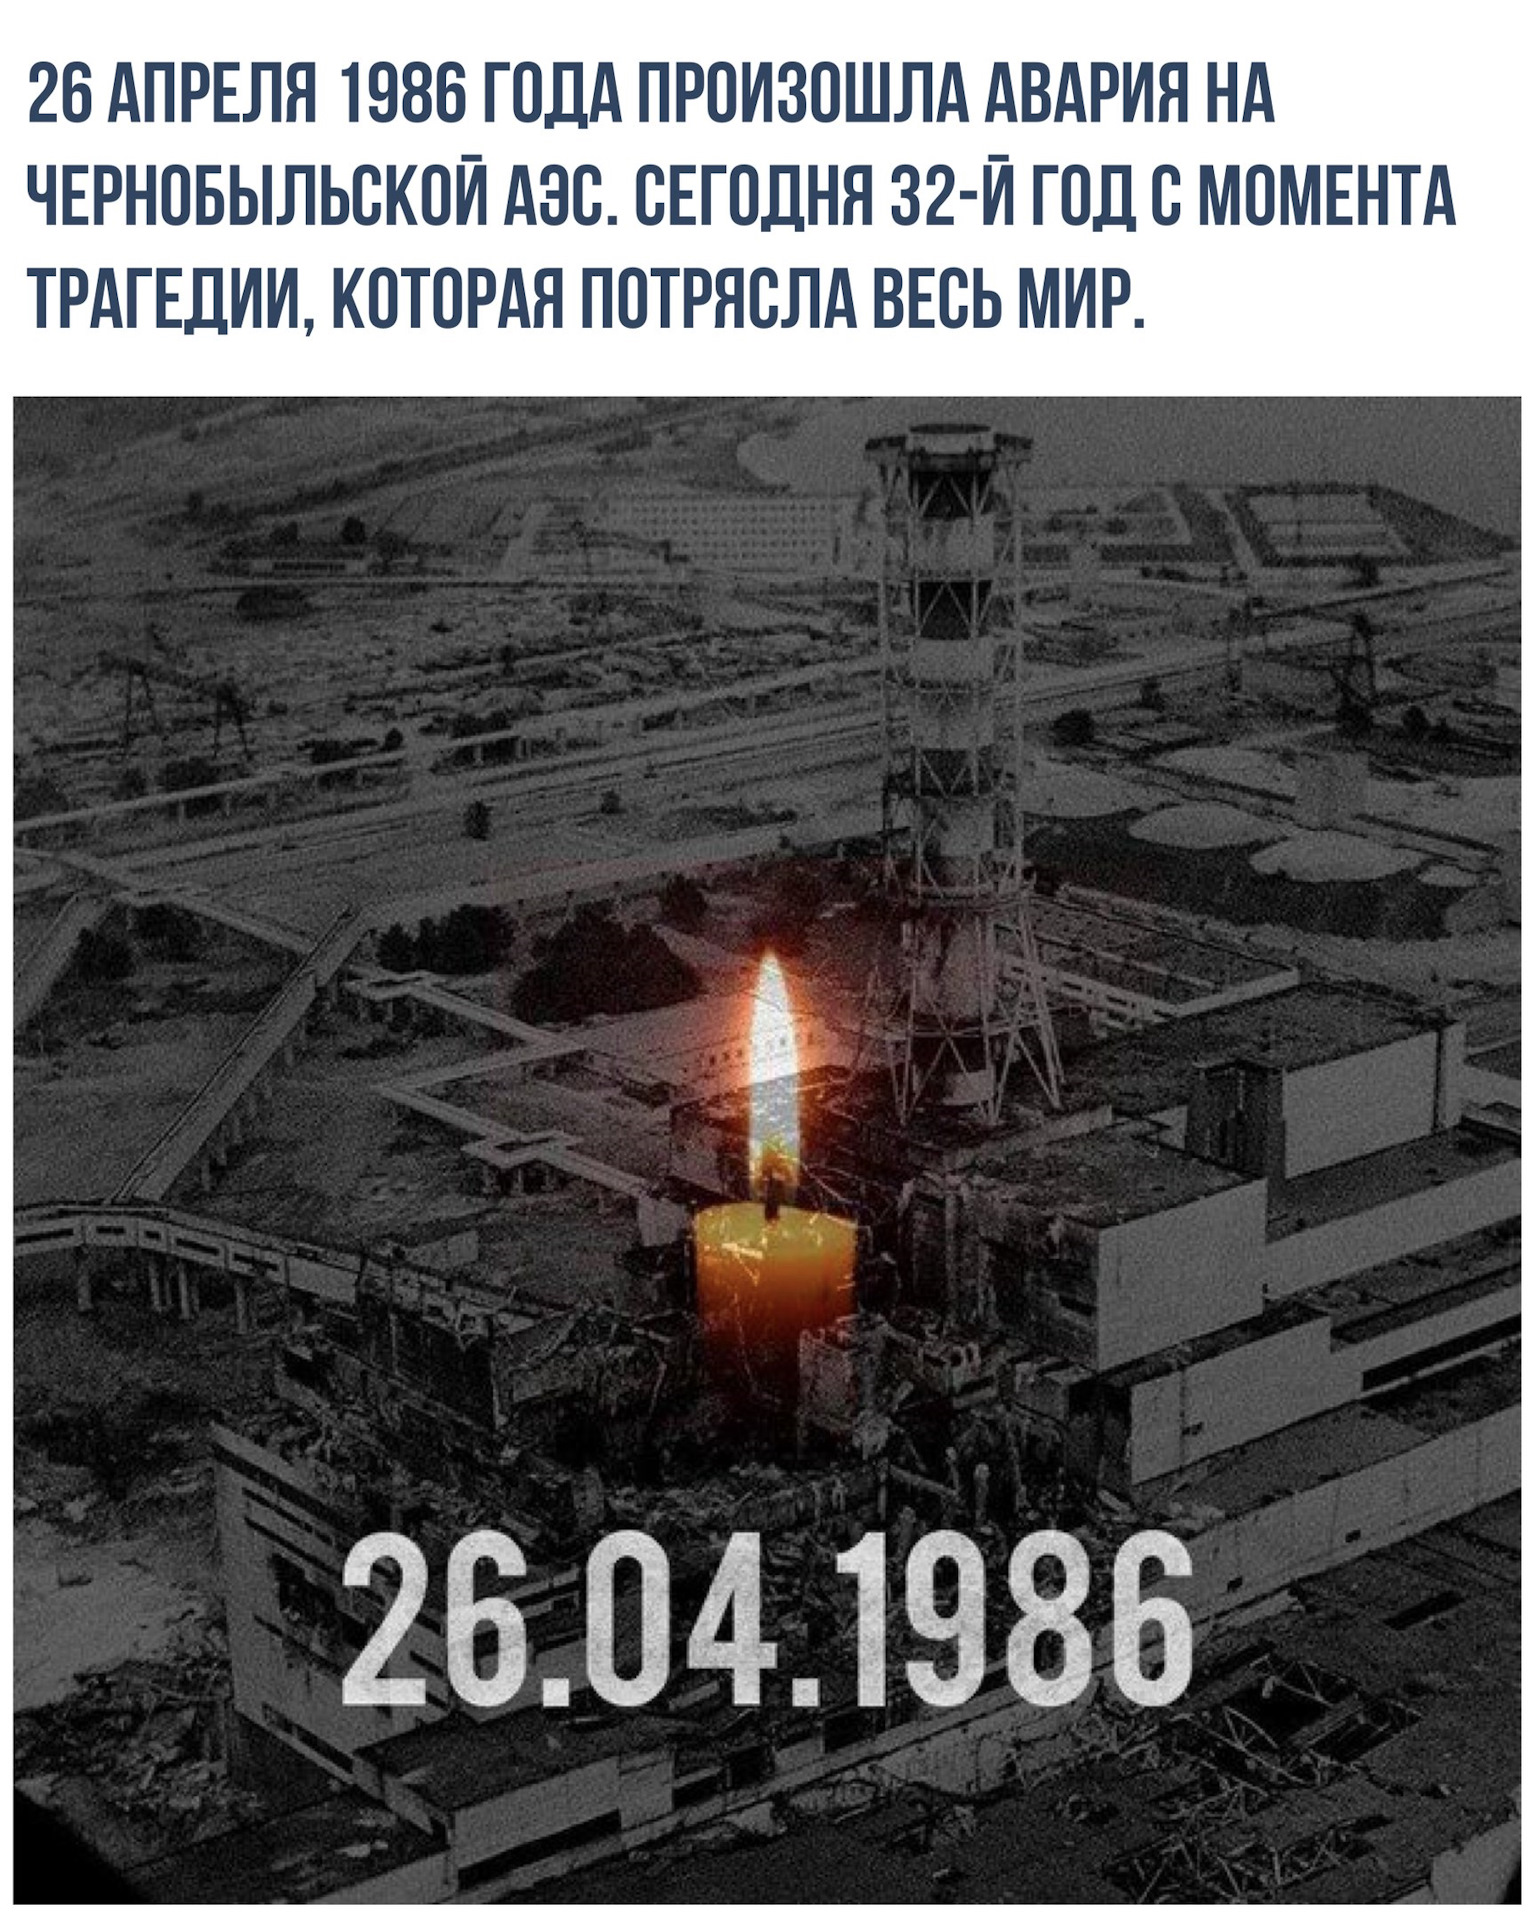 В каком году случилась чернобыльская аэс. Чернобыль 26 апреля 1986. Катастрофа на Чернобыльской АЭС 26 апреля 1986 года. 26 Апреля 1986 года Чернобыльская АЭС. Чернобыль 1986 год 25 апреля.